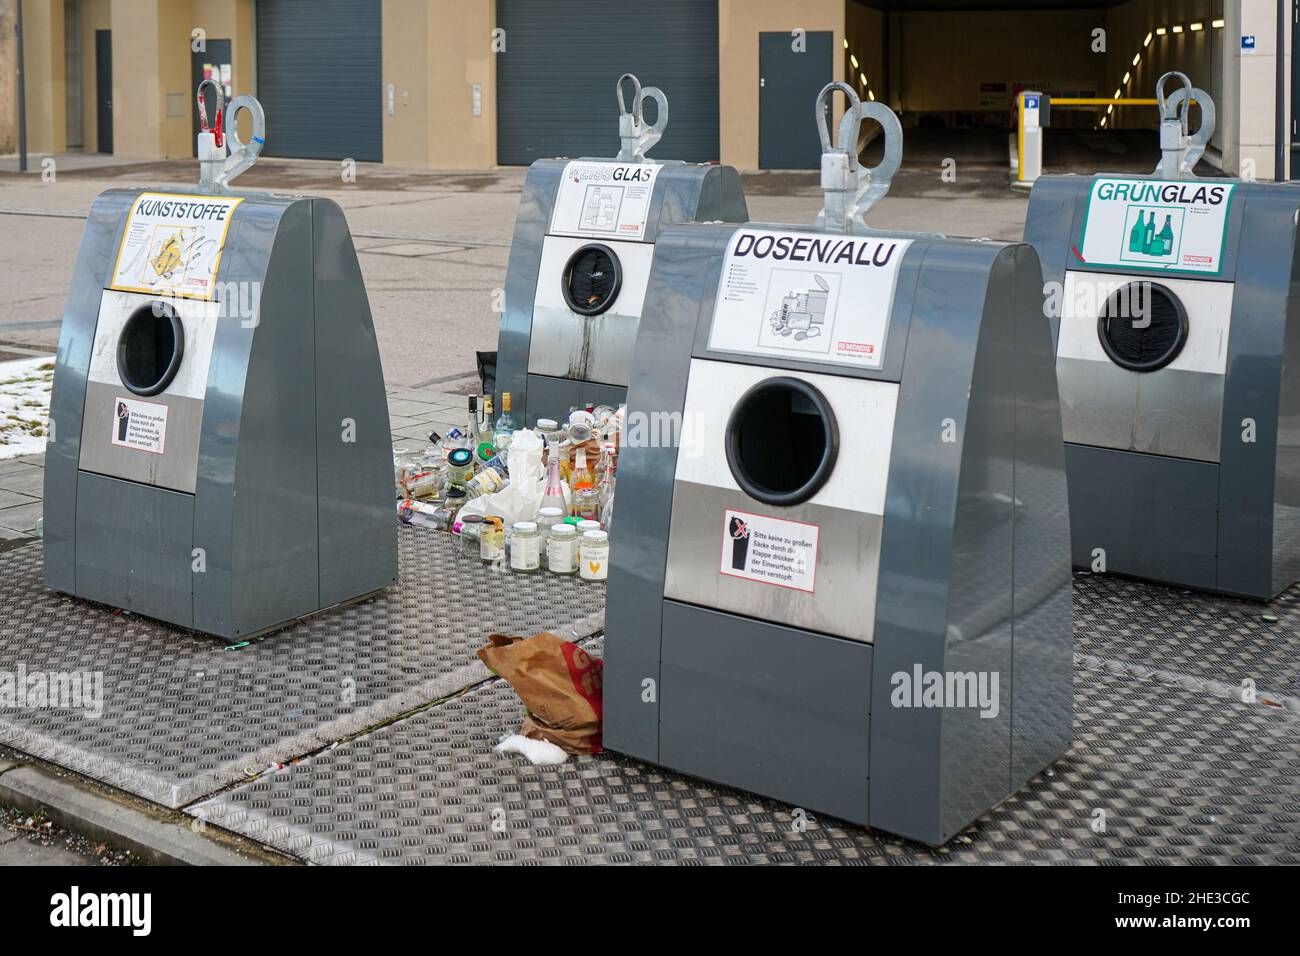 Quattro moderni contenitori in alluminio per materiali riciclabili di fronte all'ingresso di un parcheggio sotterraneo. Le bottiglie sono poste vicino ai contenitori. Foto Stock